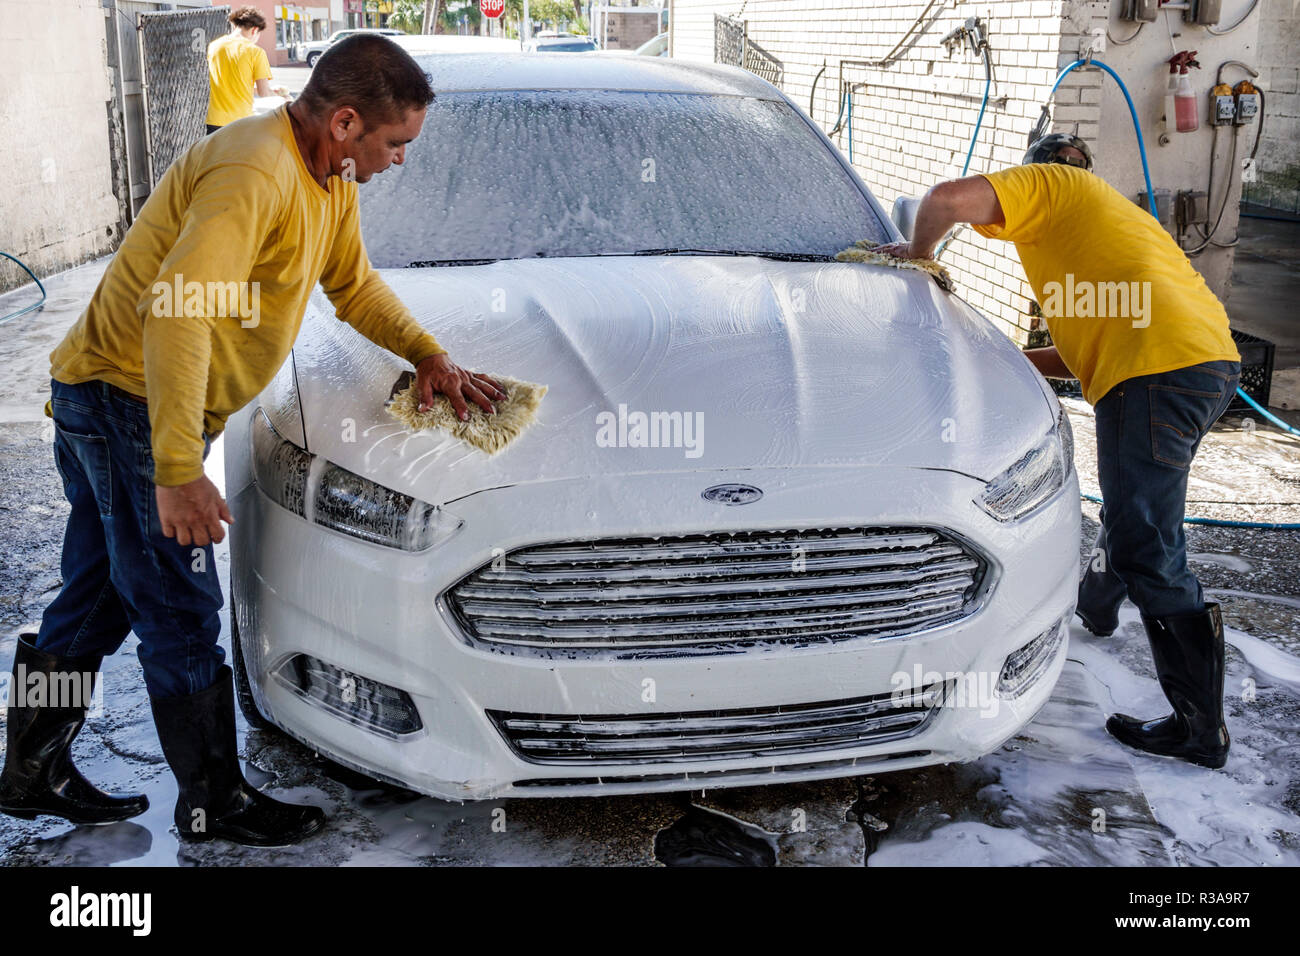 Miami Florida,Little Havana,lavage de voiture,blanc Ford Fusion,hispanique homme hommes,travail,nettoyage,savon sope essuyage,travail d'équipe,FL181115002 Banque D'Images